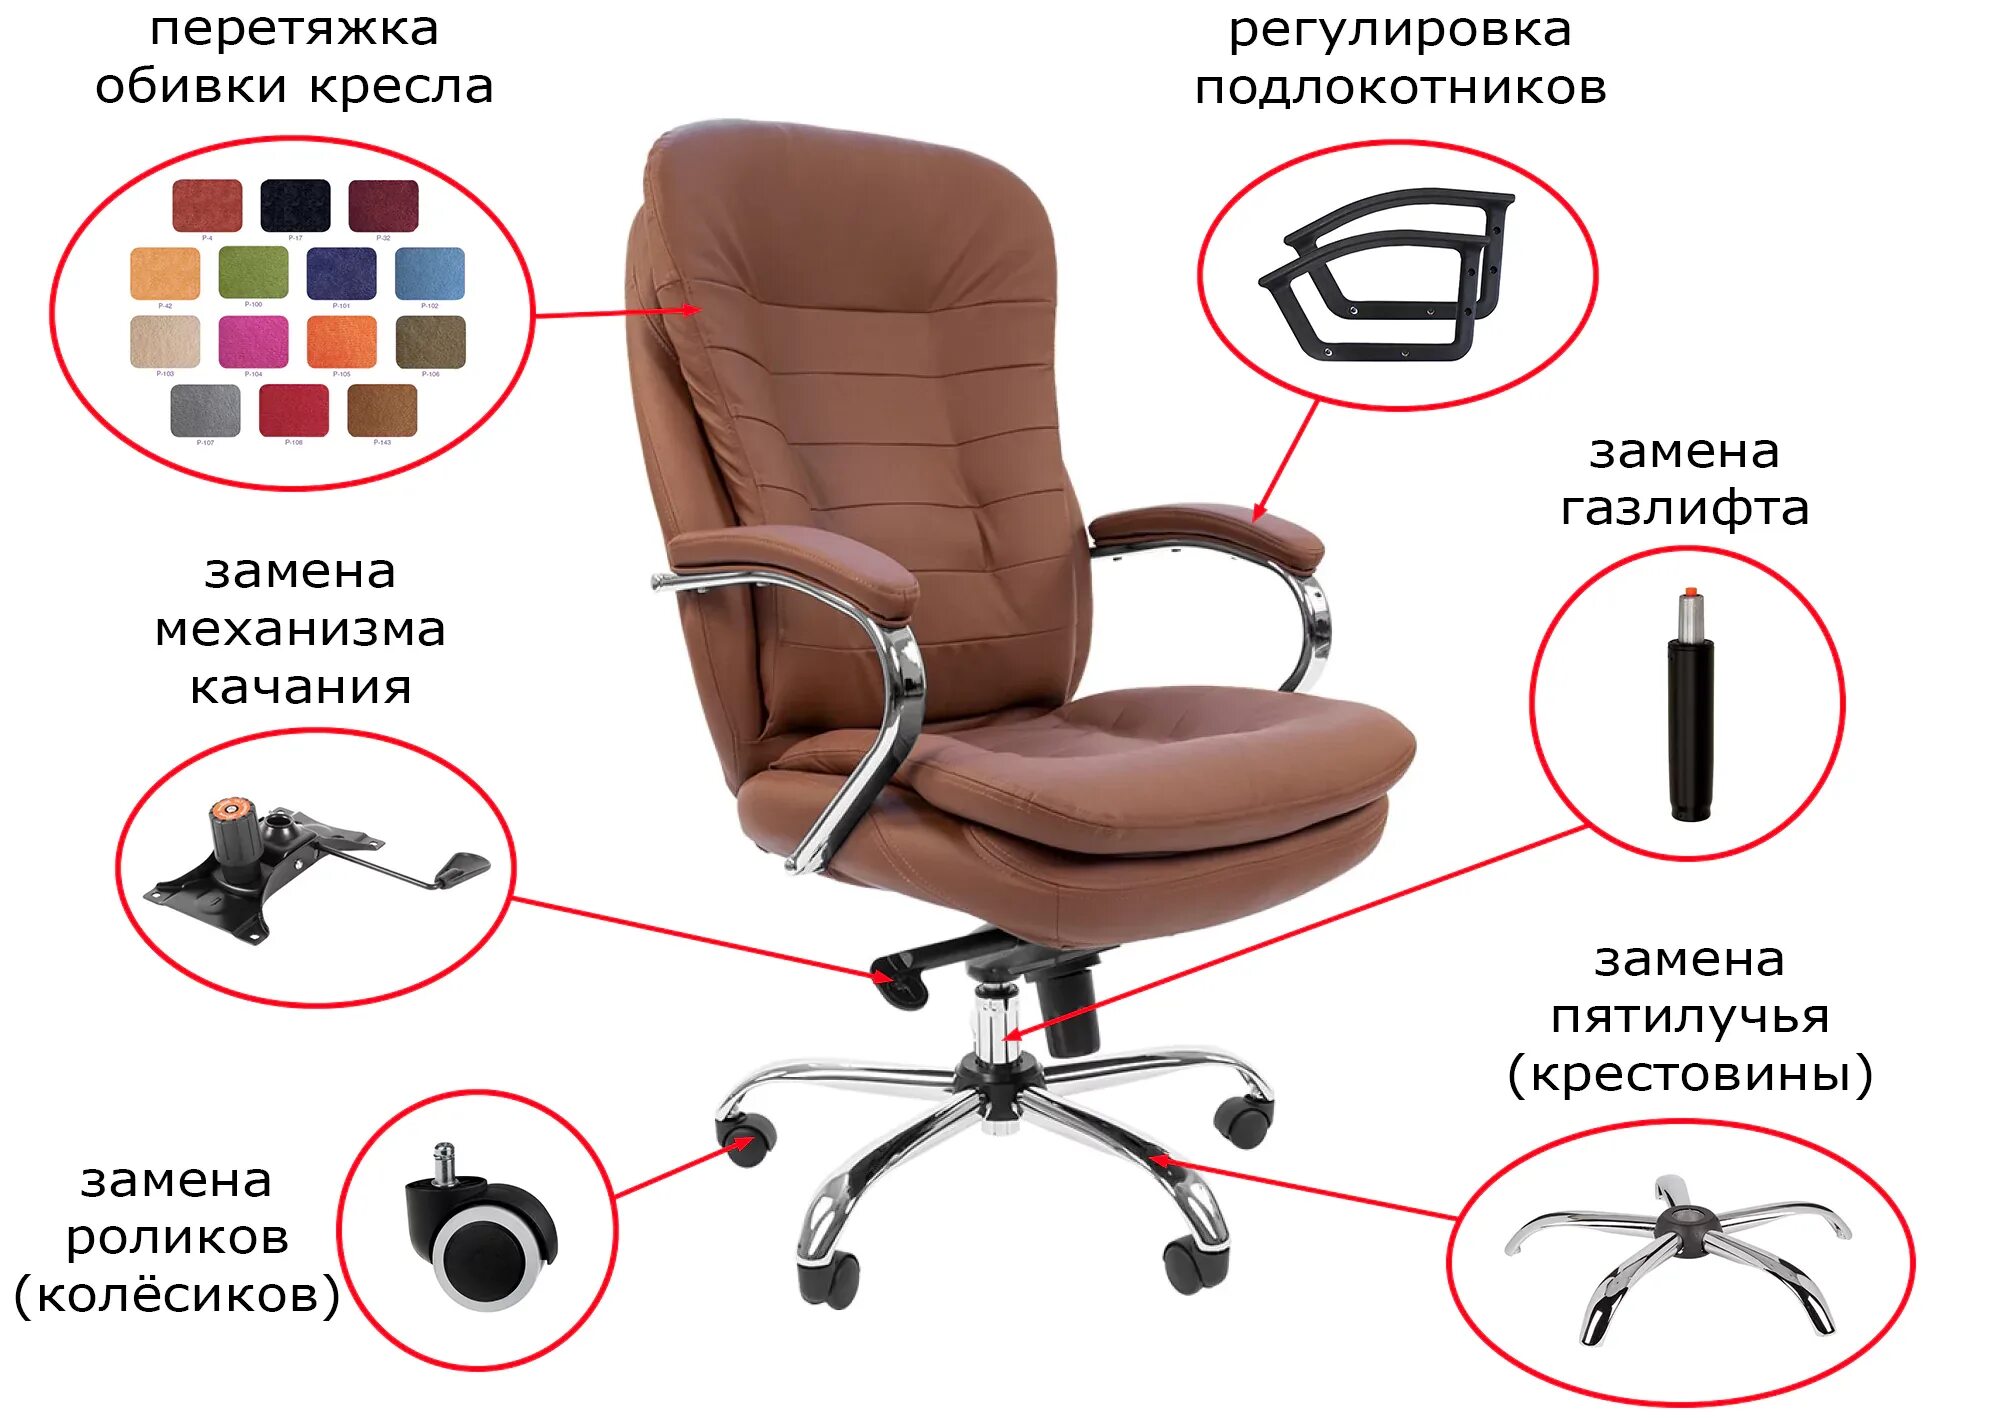 Мультиблок офисного кресла. Механизм качания 110х100 мм кресла. Механизм компьютерного кресла. Регулировка офисного кресла механизм качания.